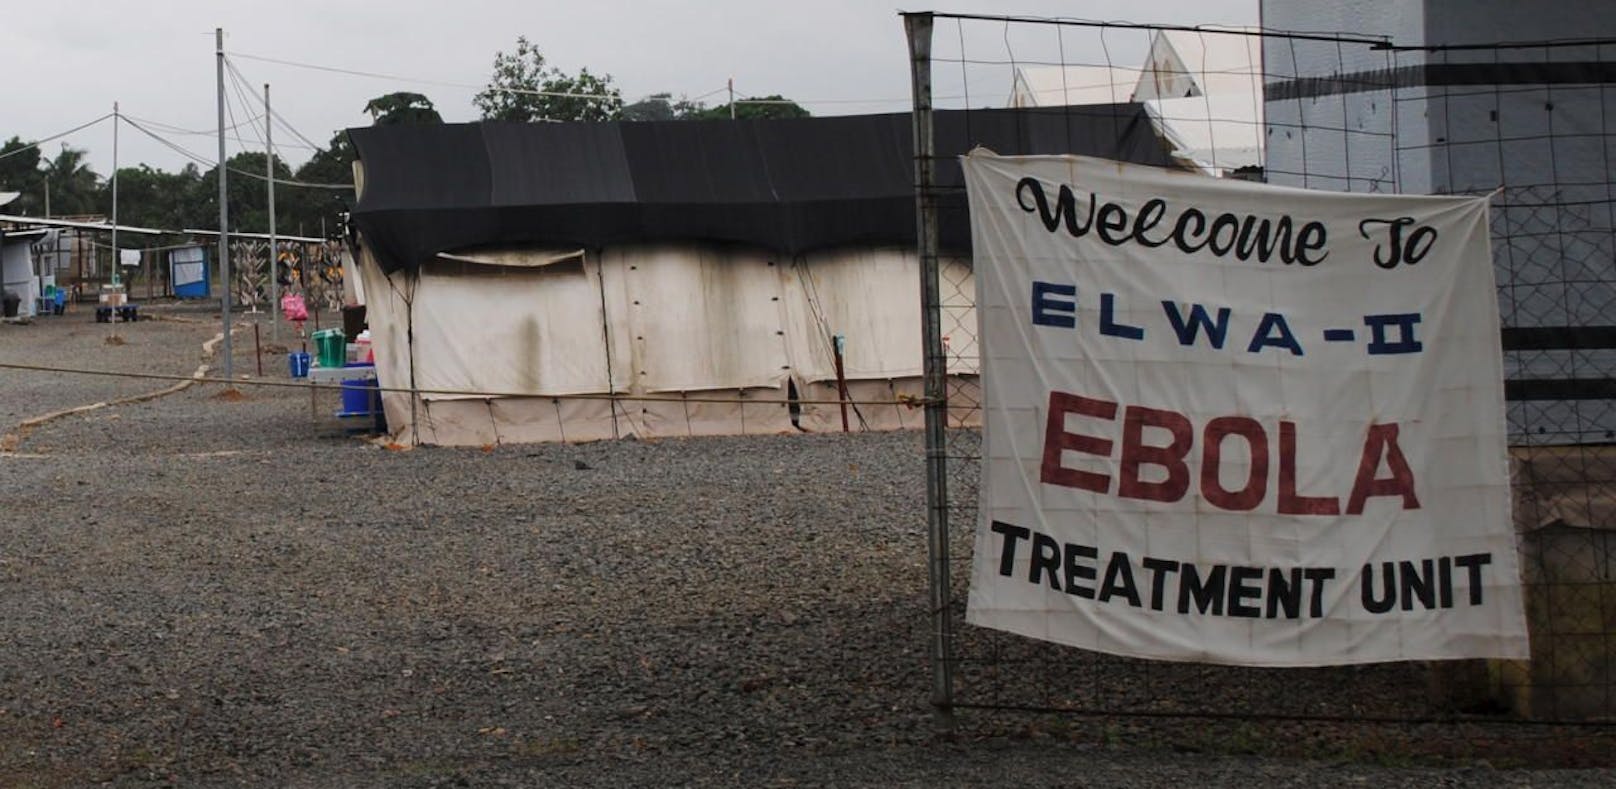 Ein Behandlungszentrum für Ebola-Kranke in Paynesville, Liberia.